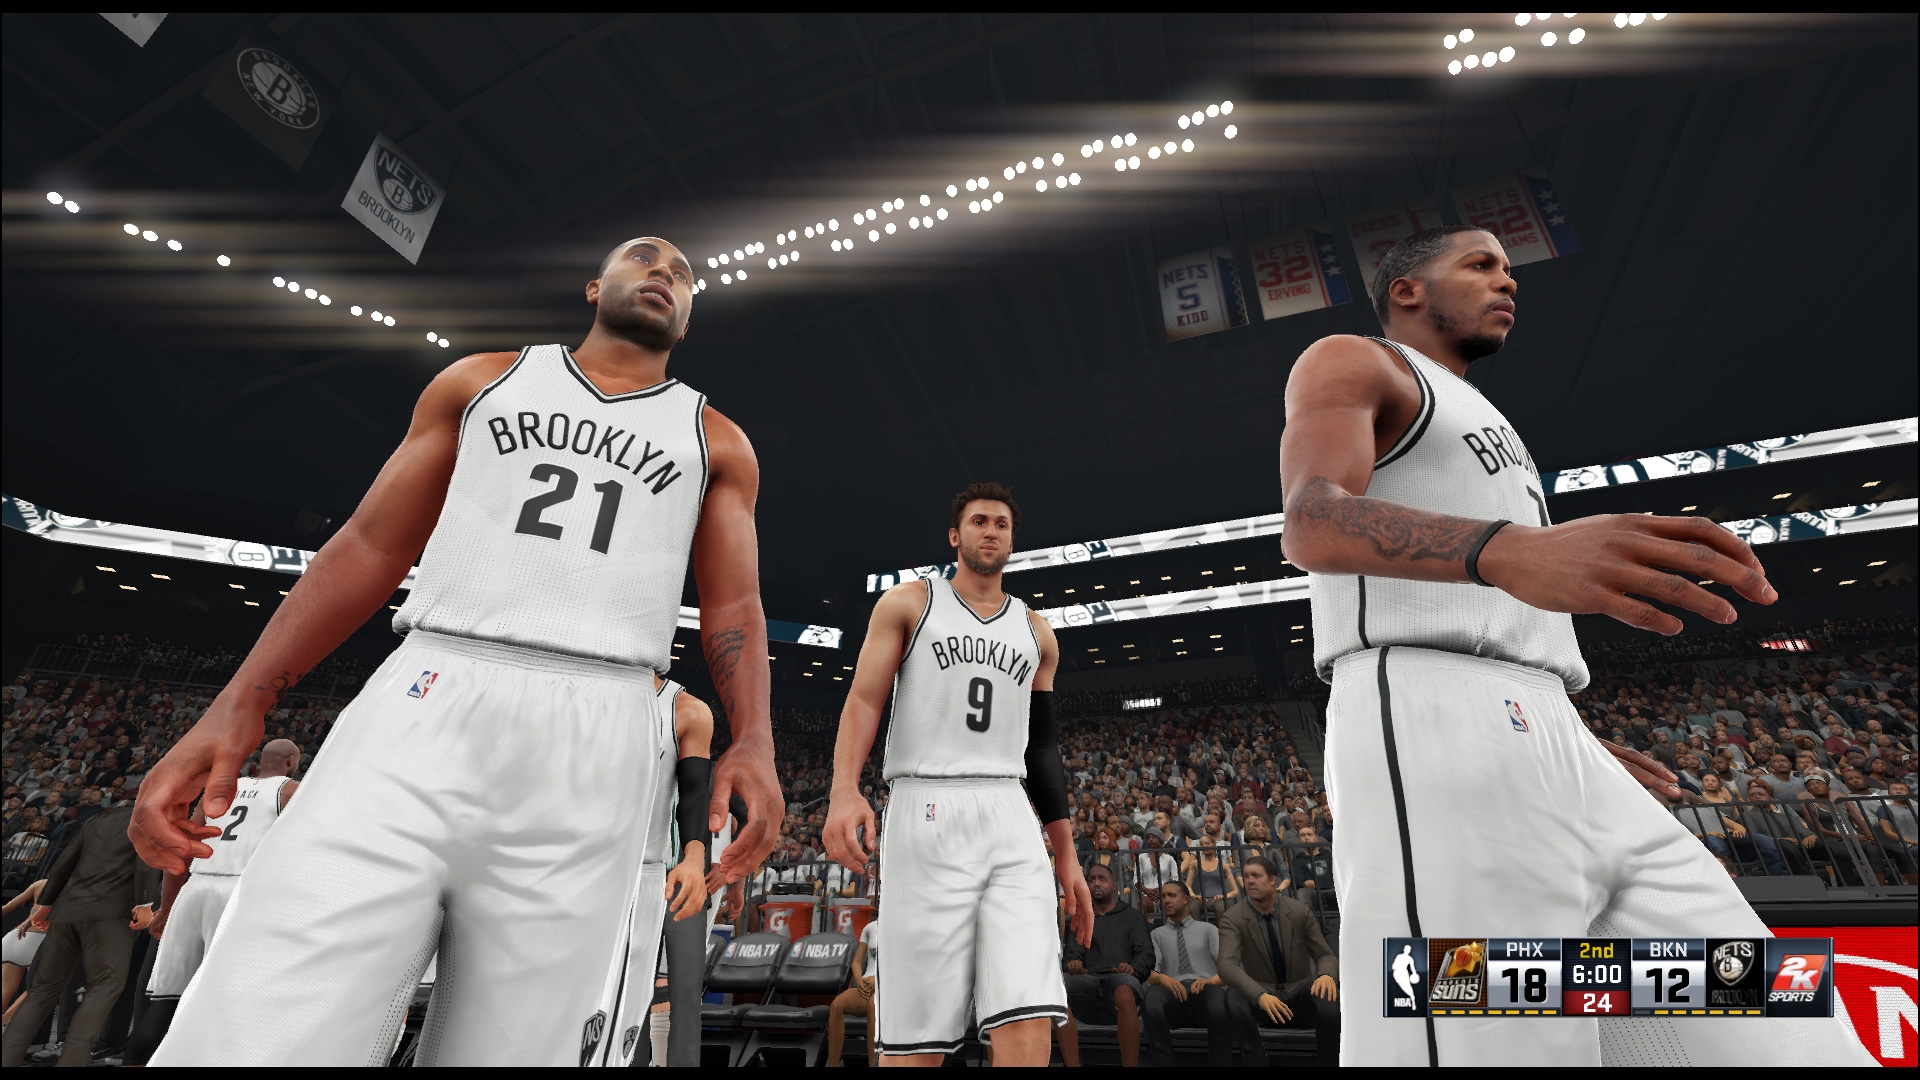 Скриншот из игры NBA 2K16 под номером 5